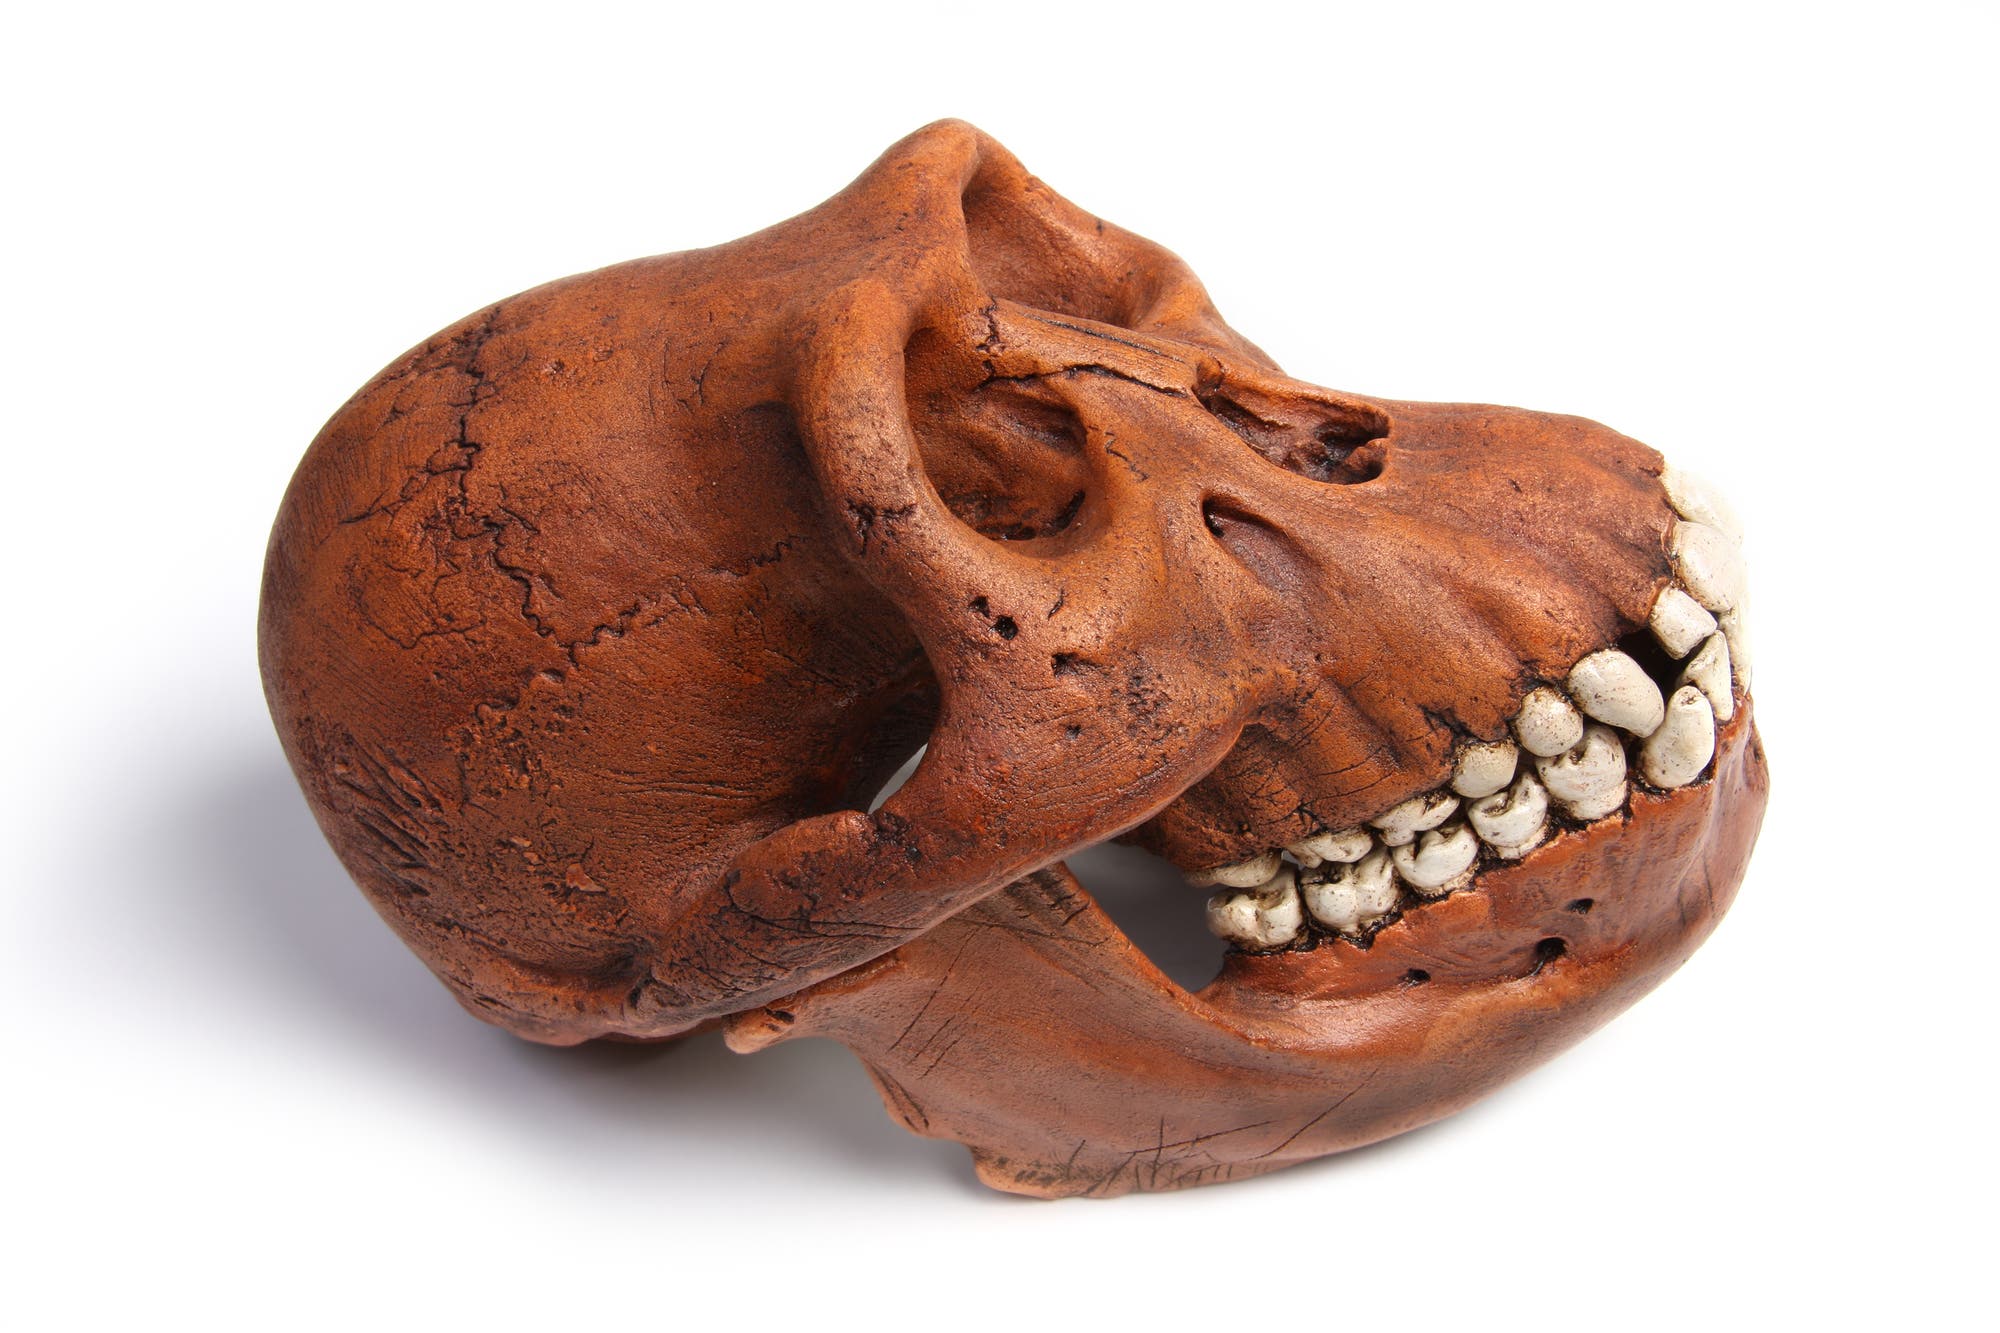 Schädelrekostruktion eines Australopithecus – möglicherweise ein verwandter des Homo luzonensis.